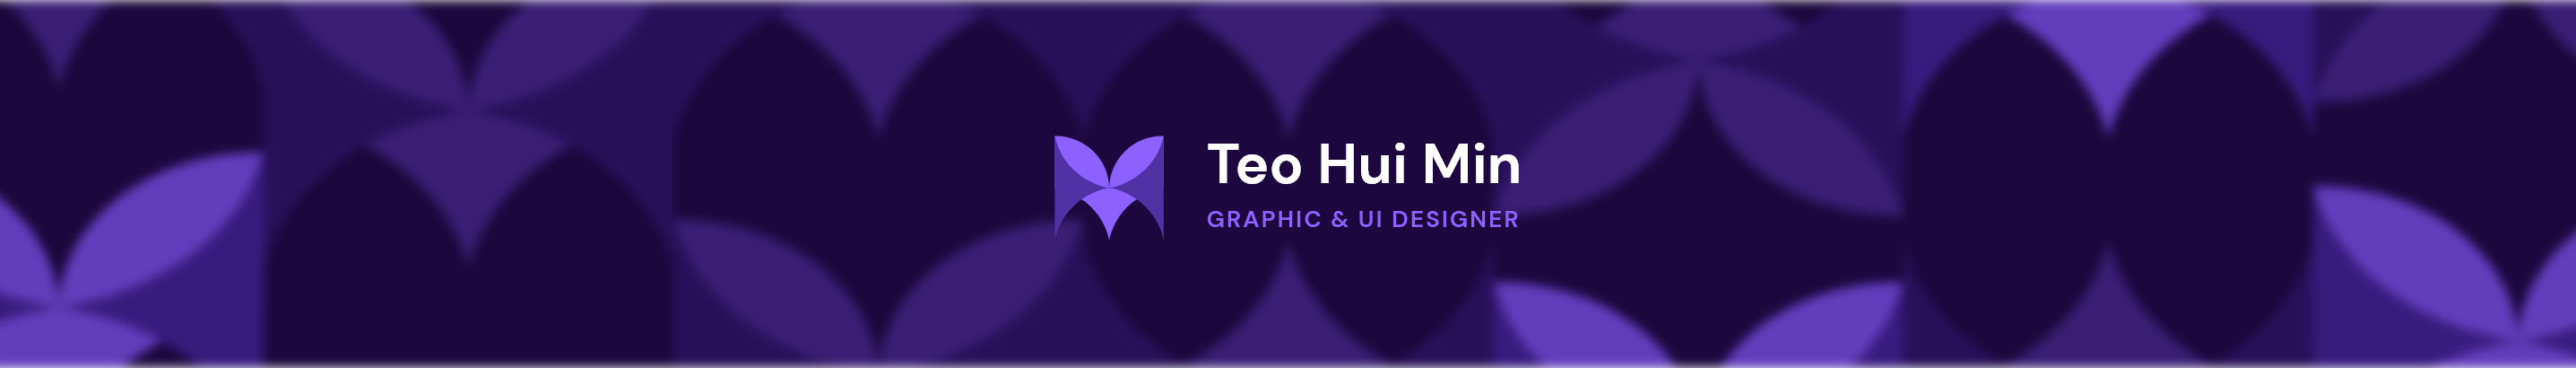 Teo Hui Min のプロファイルバナー